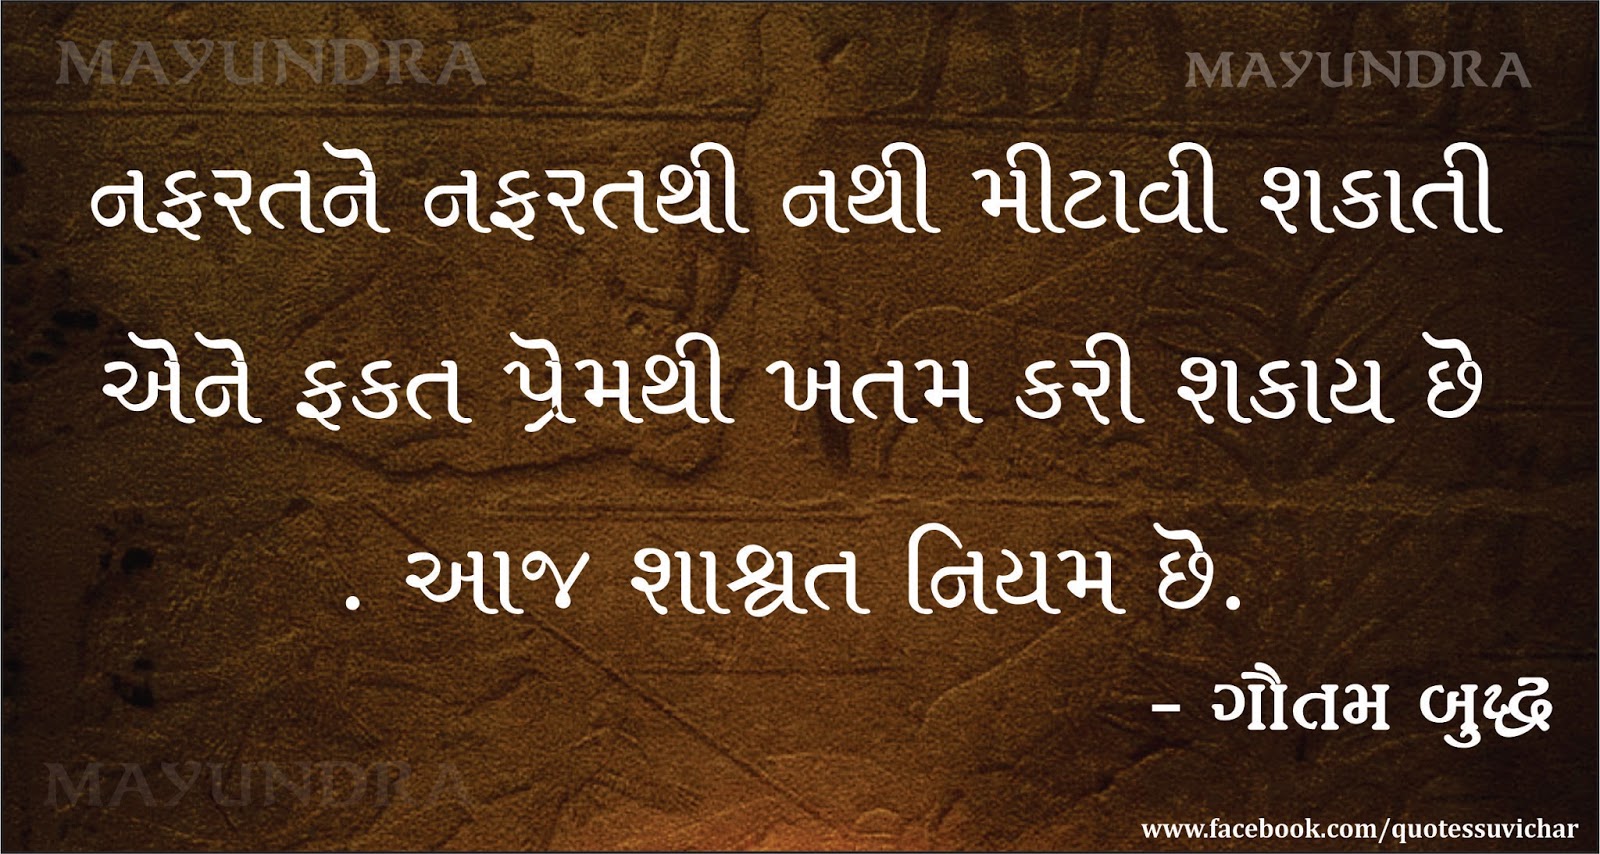 Gujarati Quotes Love Gautam Buddha